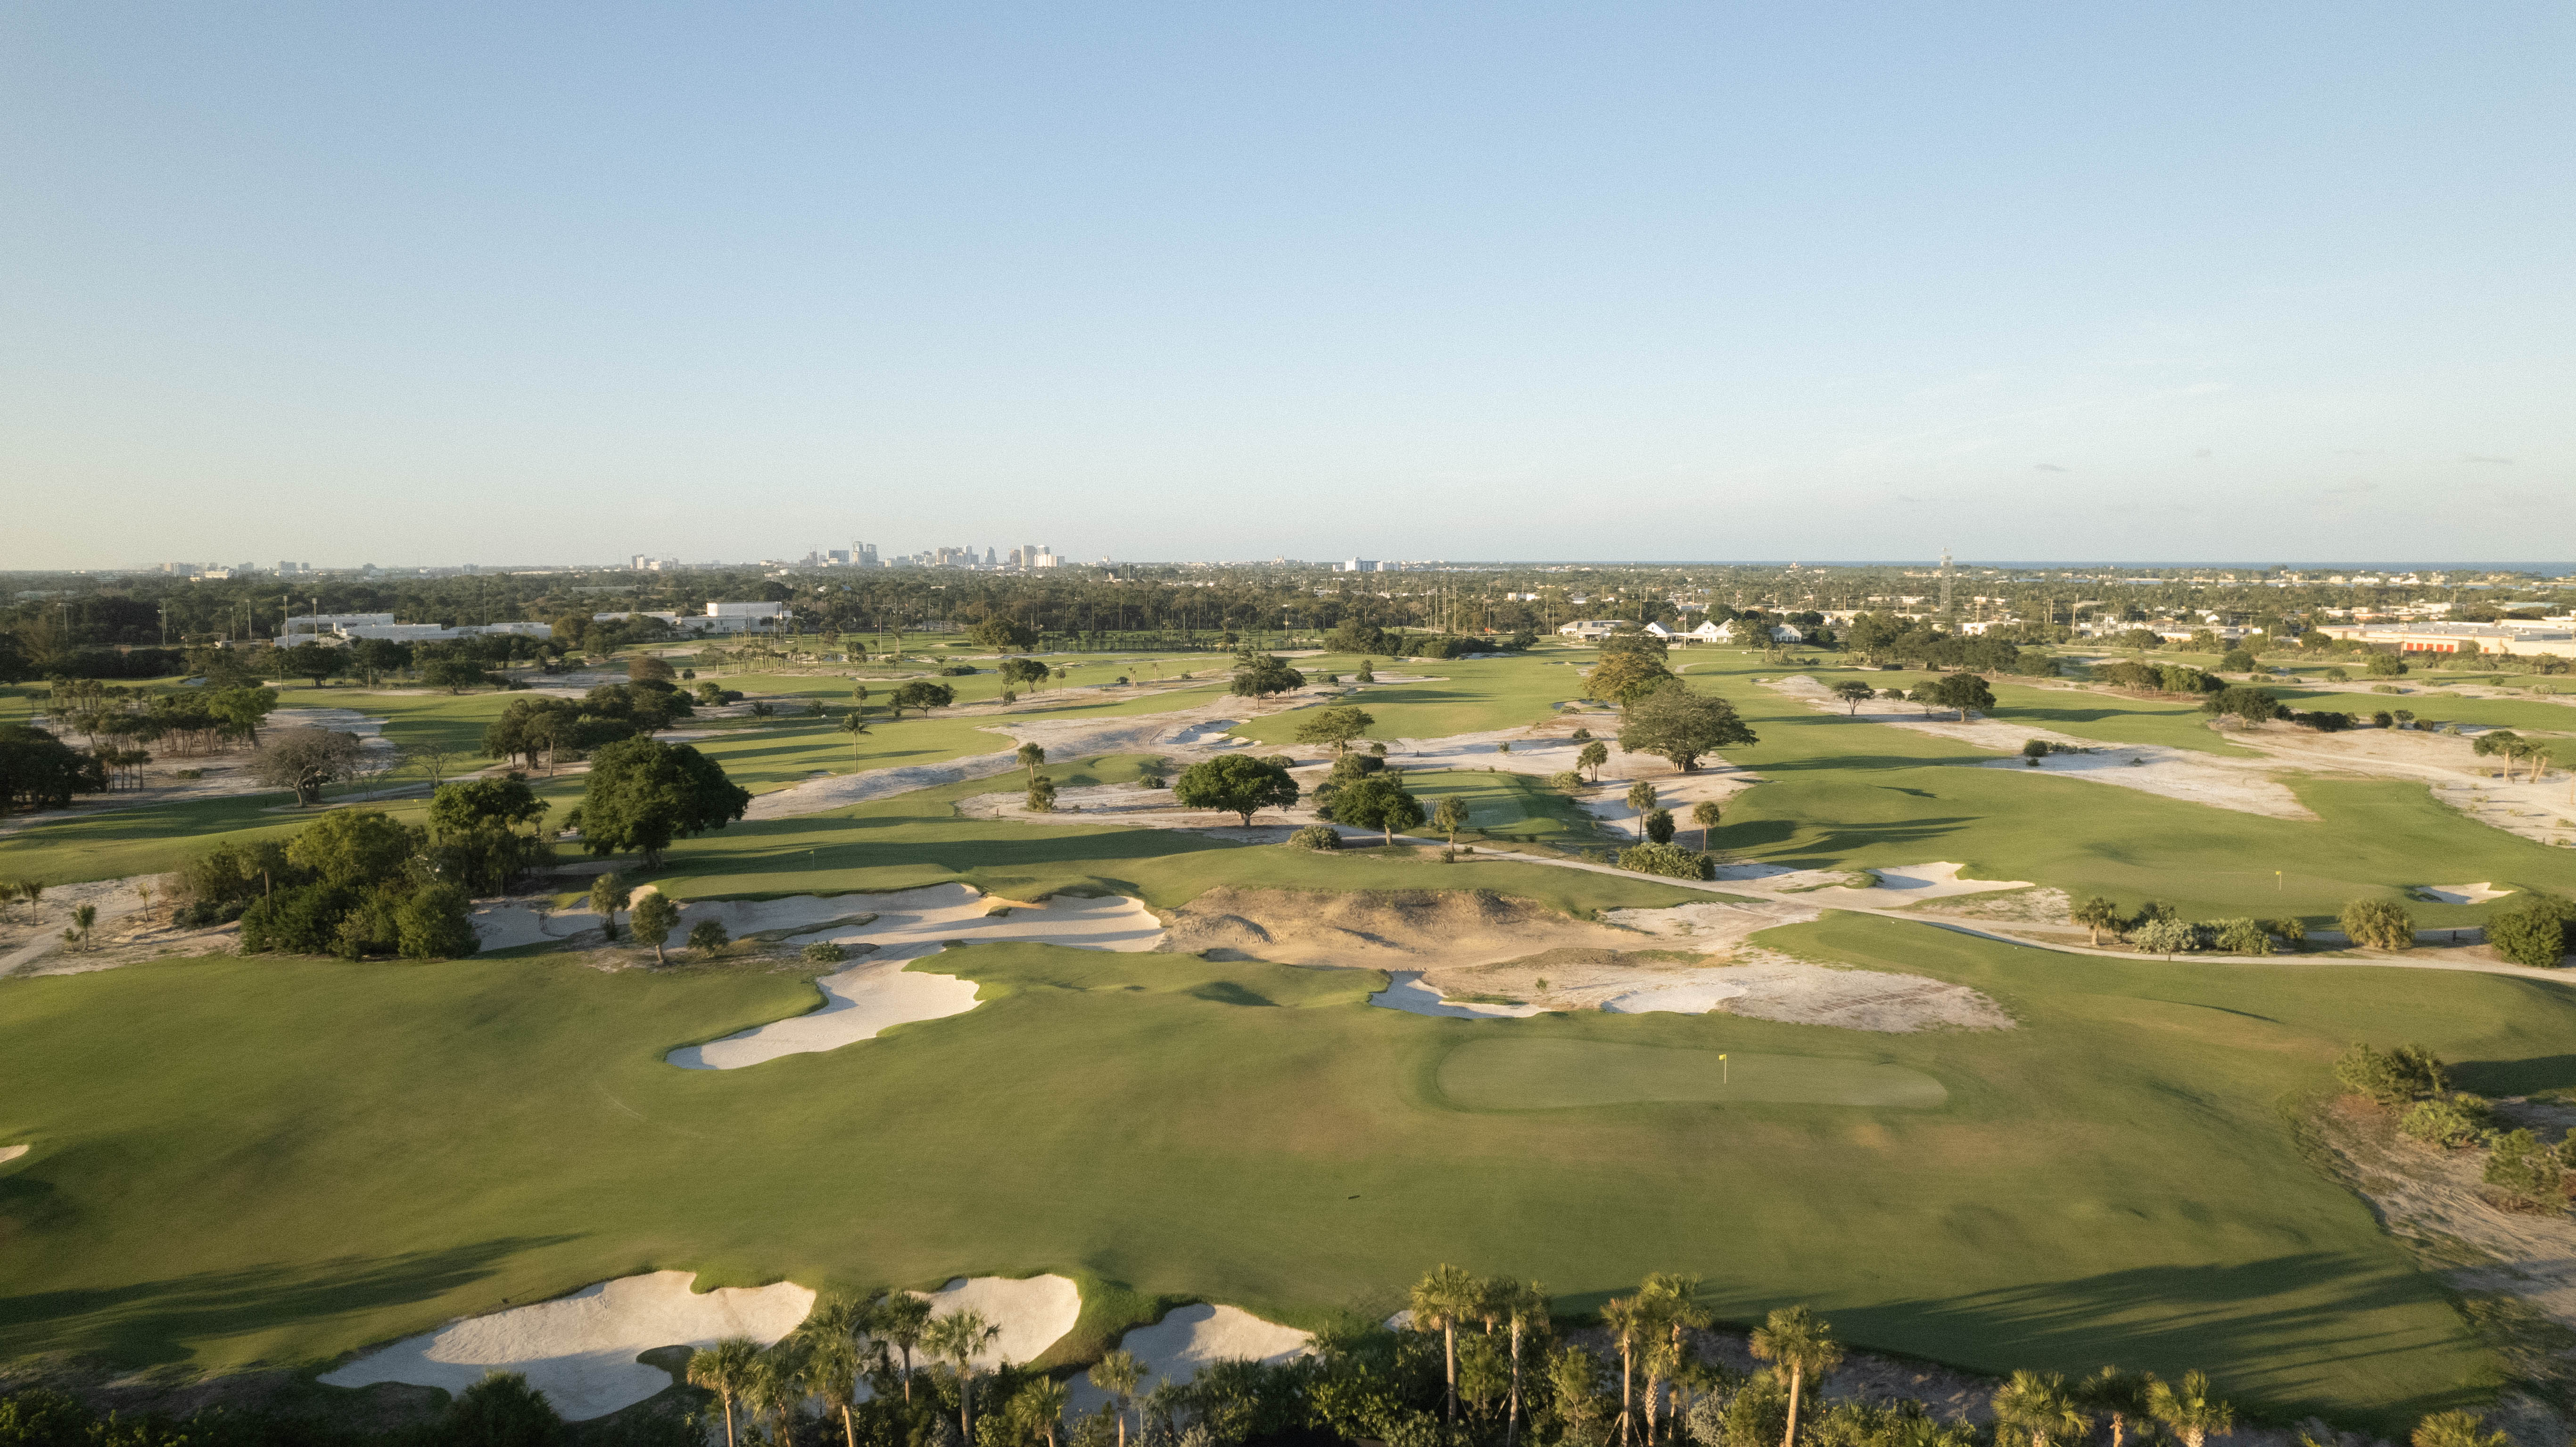 Wide fairways and sandy soil define The Park. (Trey Wren/Sticks Golf)